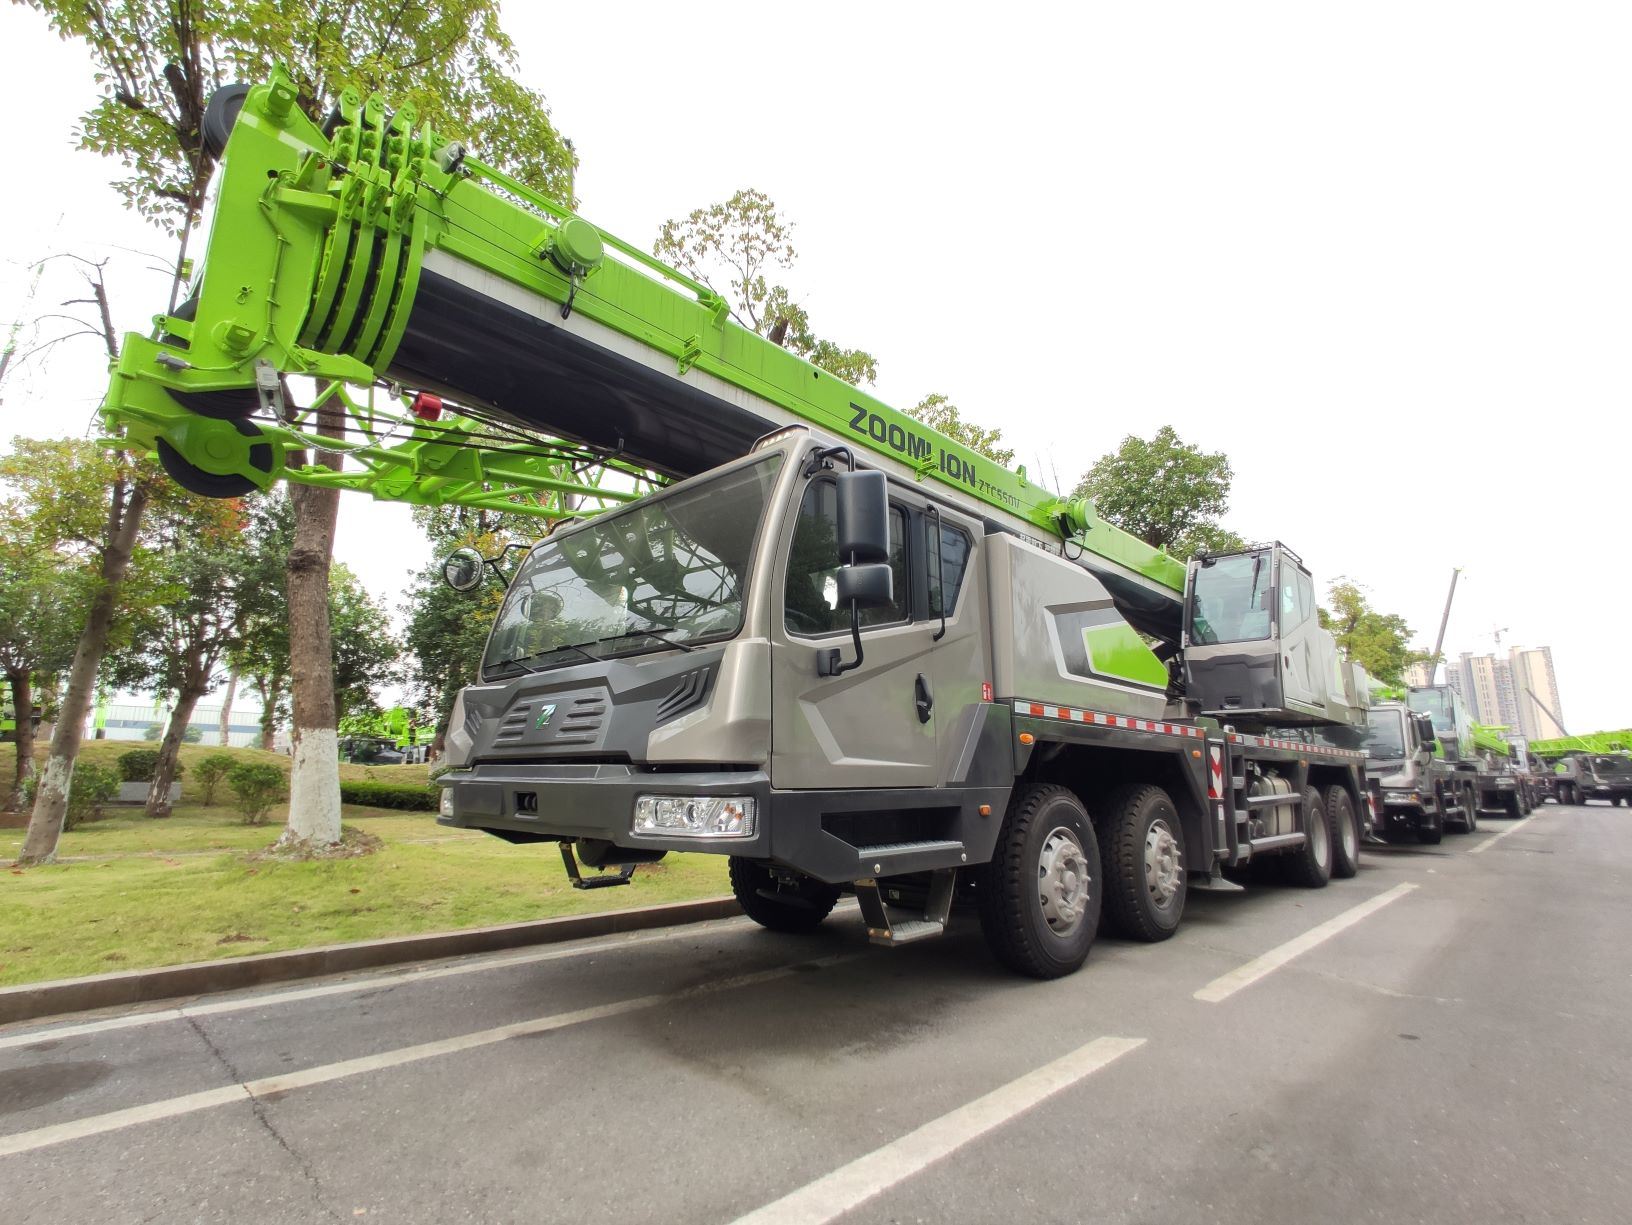 Zoomlion 55 Ton Truck Cranes Ztc550V532 with Weichai Yuchai Engine